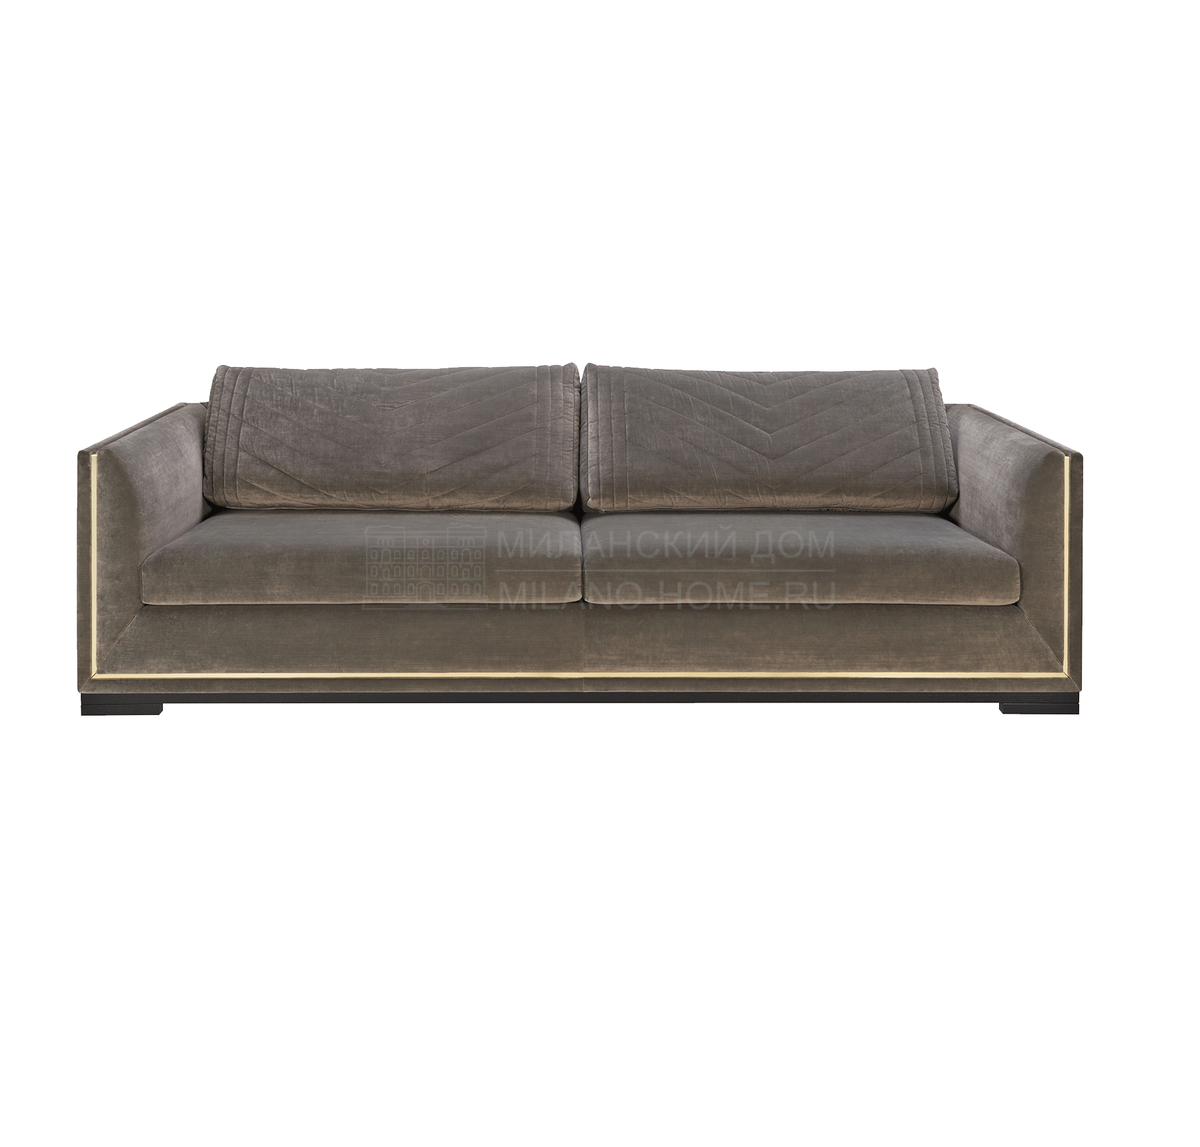 Прямой диван Salzbourg sofa из Португалии фабрики FRATO